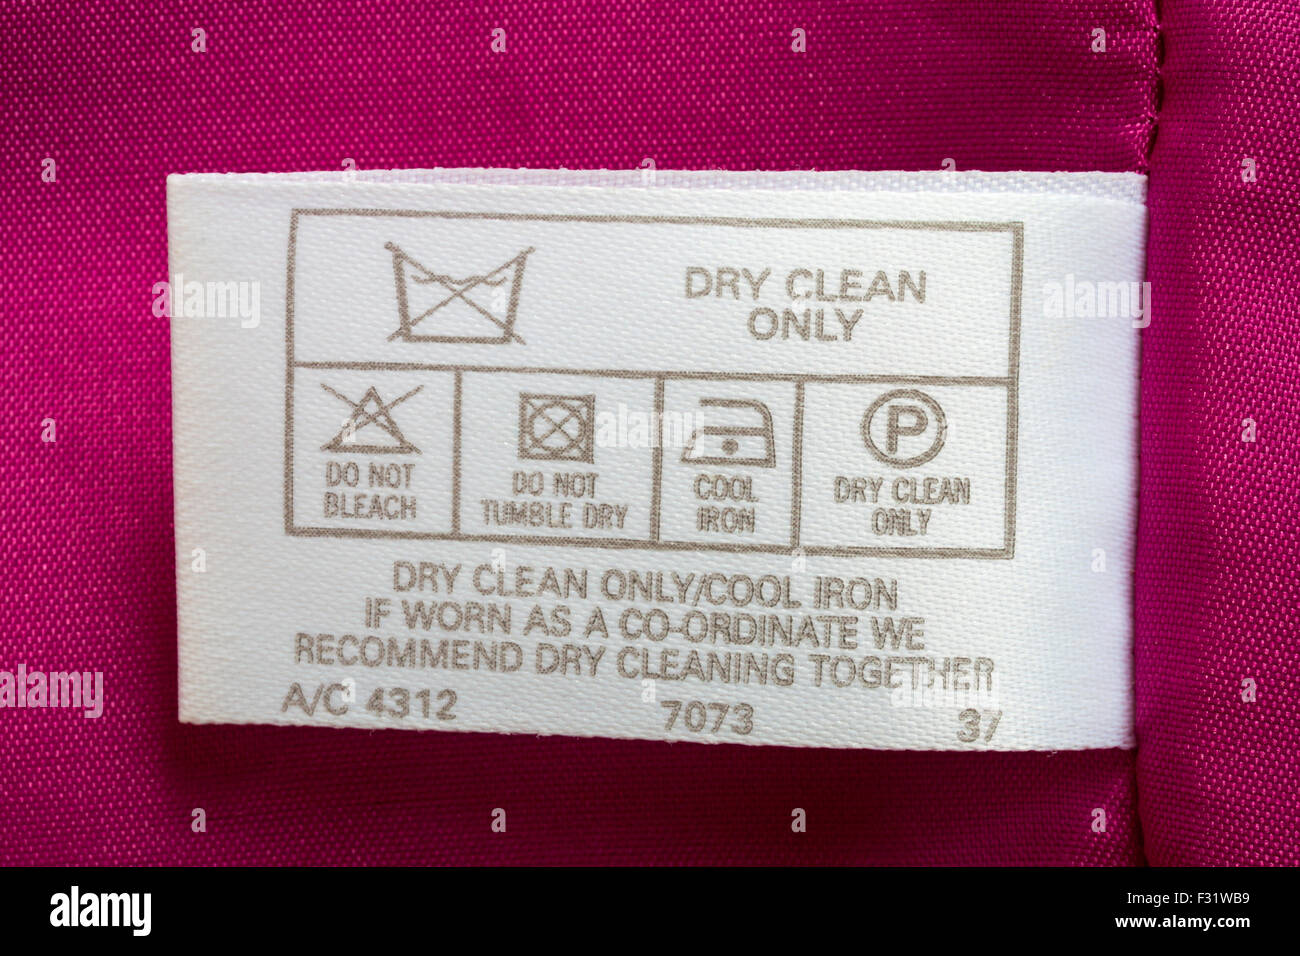 étiquette en robe rose vêtement - nettoyage à sec seulement un fer frais, si porté en coordination, nous recommandons le nettoyage à sec ensemble - symboles de lavage d'entretien Banque D'Images